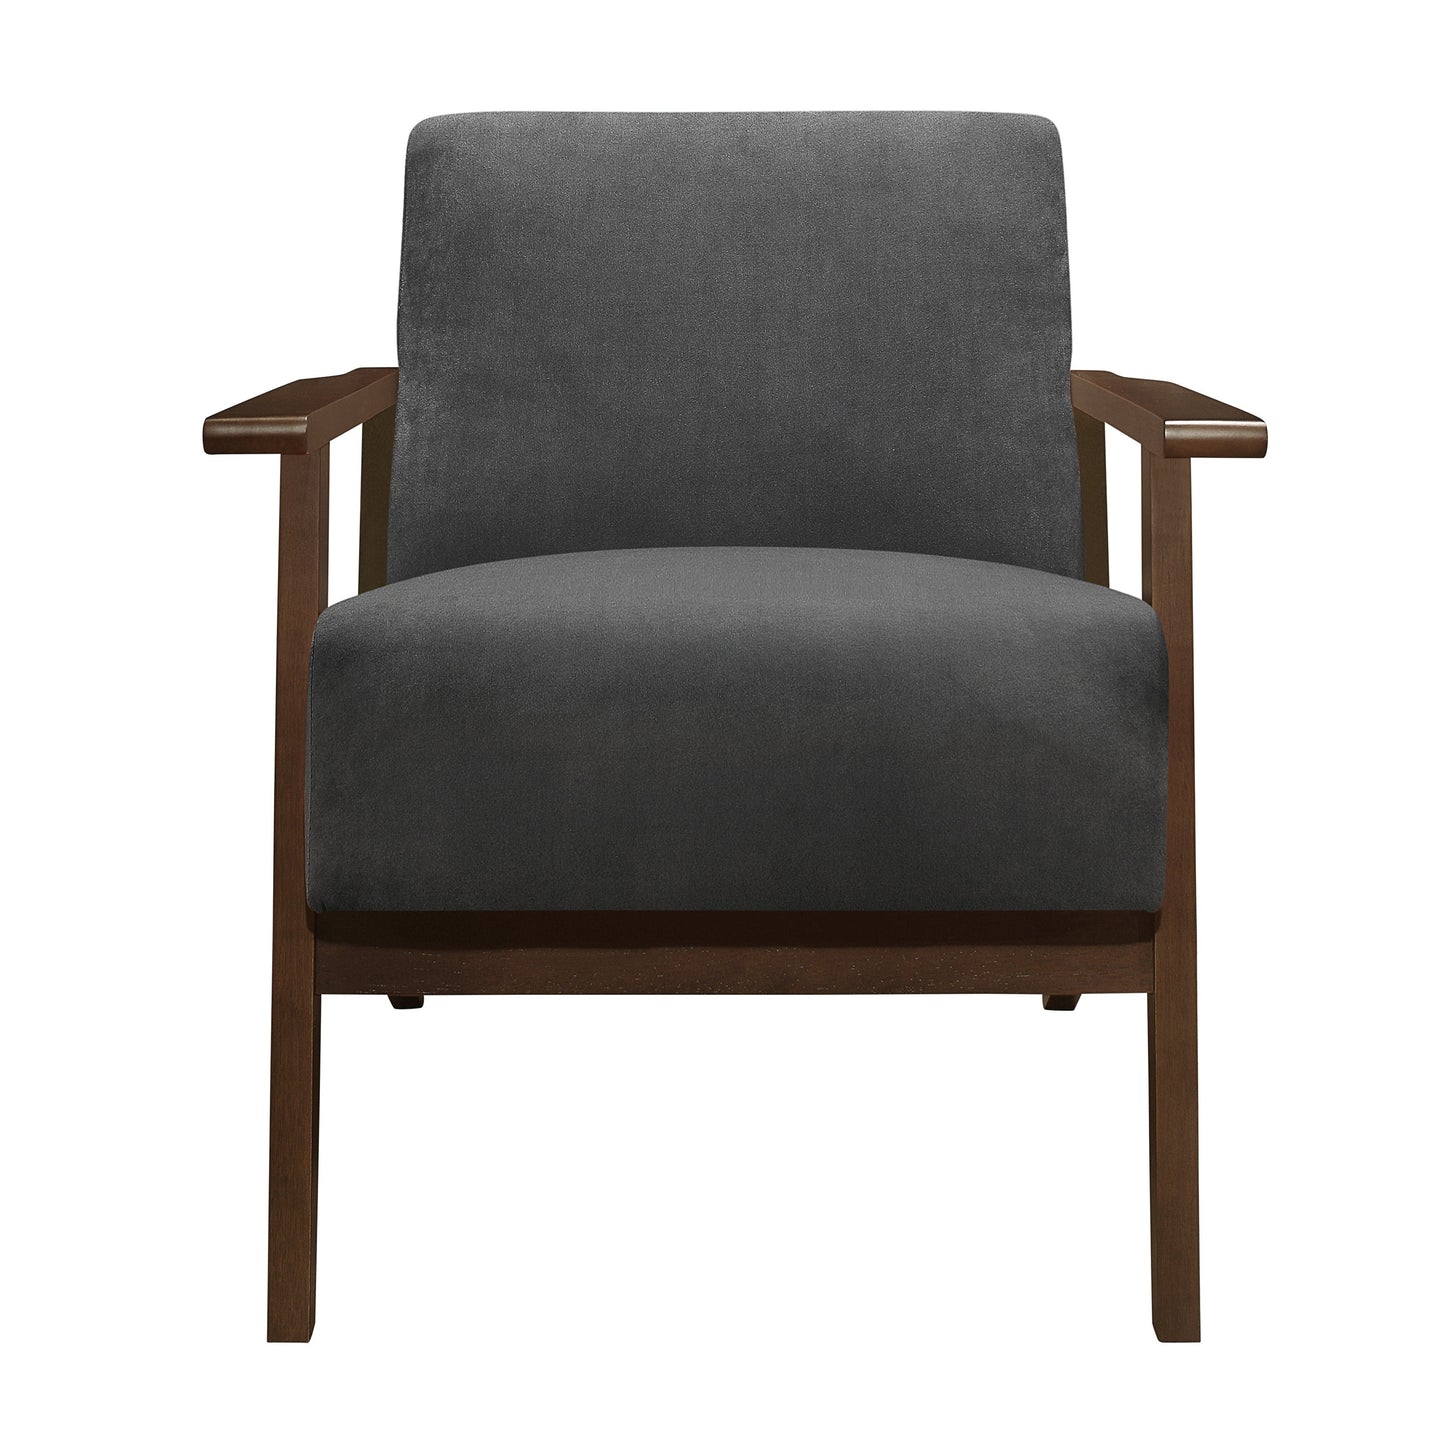 August Dark Gray Accent Chair